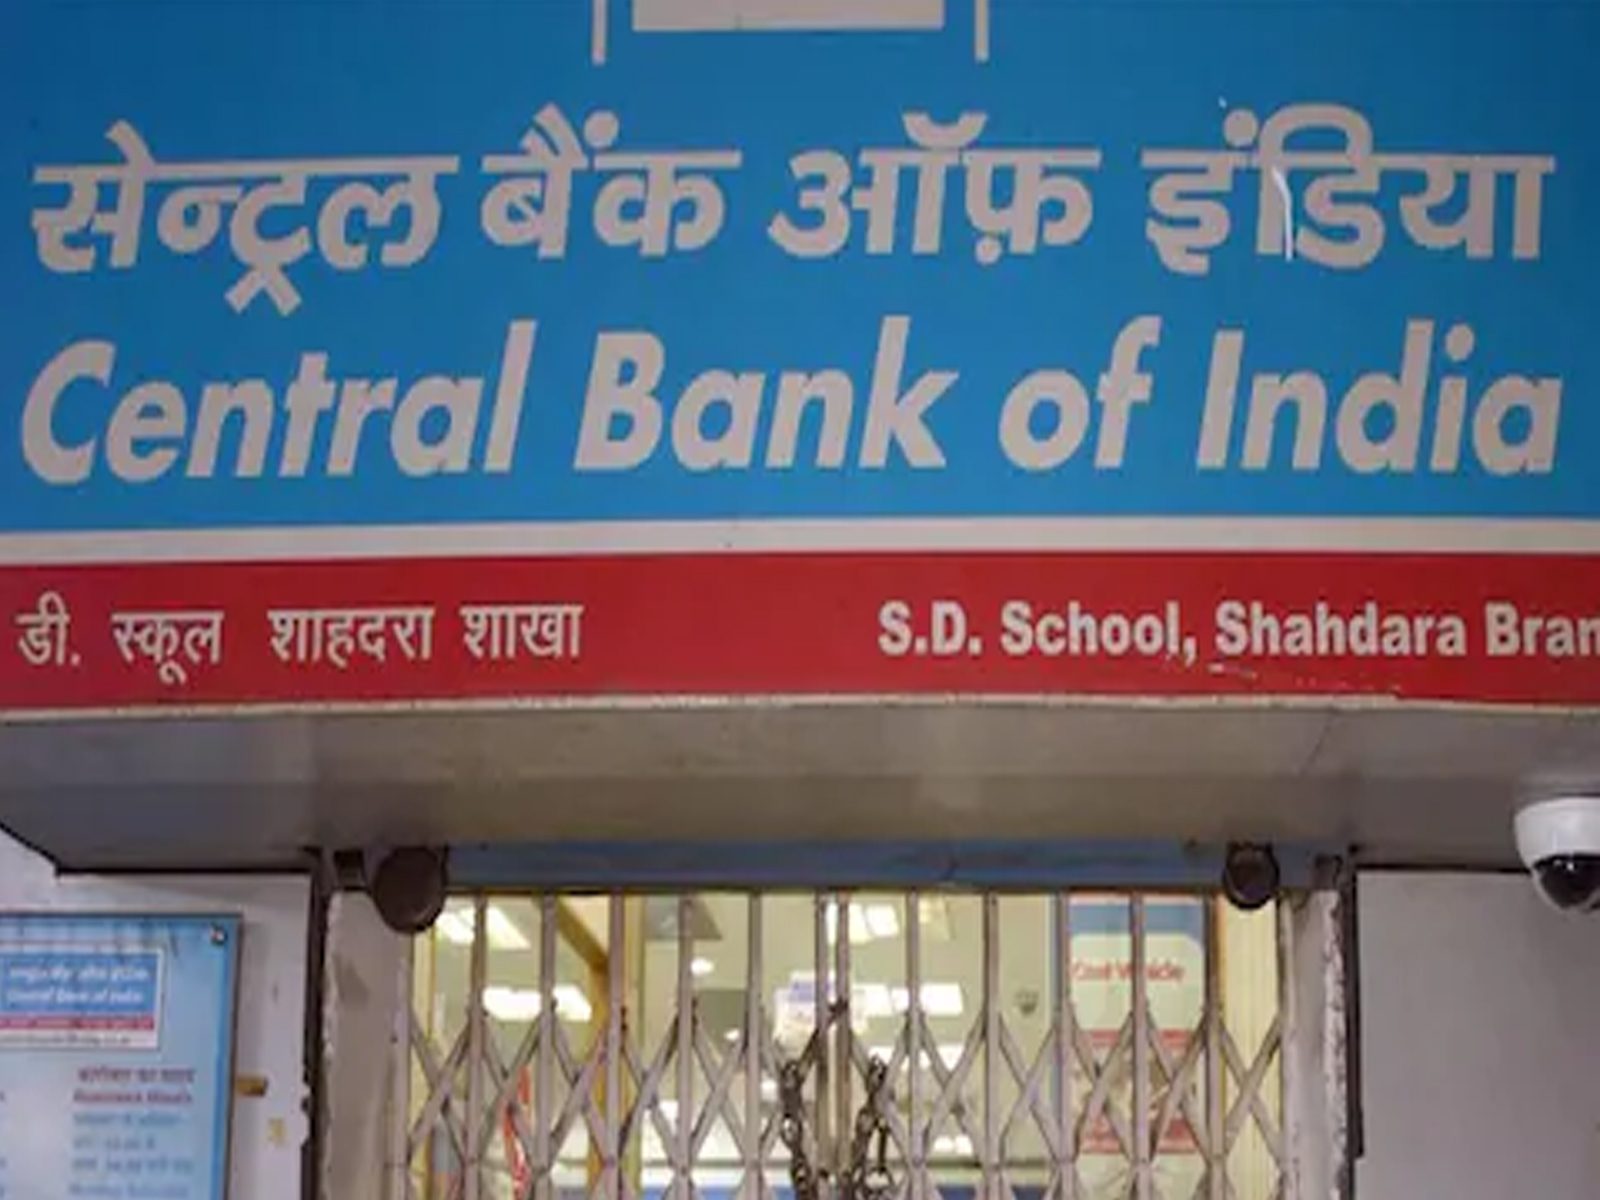 Central Bank of India ਨੇ ਵਧਾਈਆਂ FD 'ਤੇ ਵਿਆਜ ਦਰਾਂ, ਜਾਣੋਂ ਨਵੀਆਂ ਦਰਾਂ